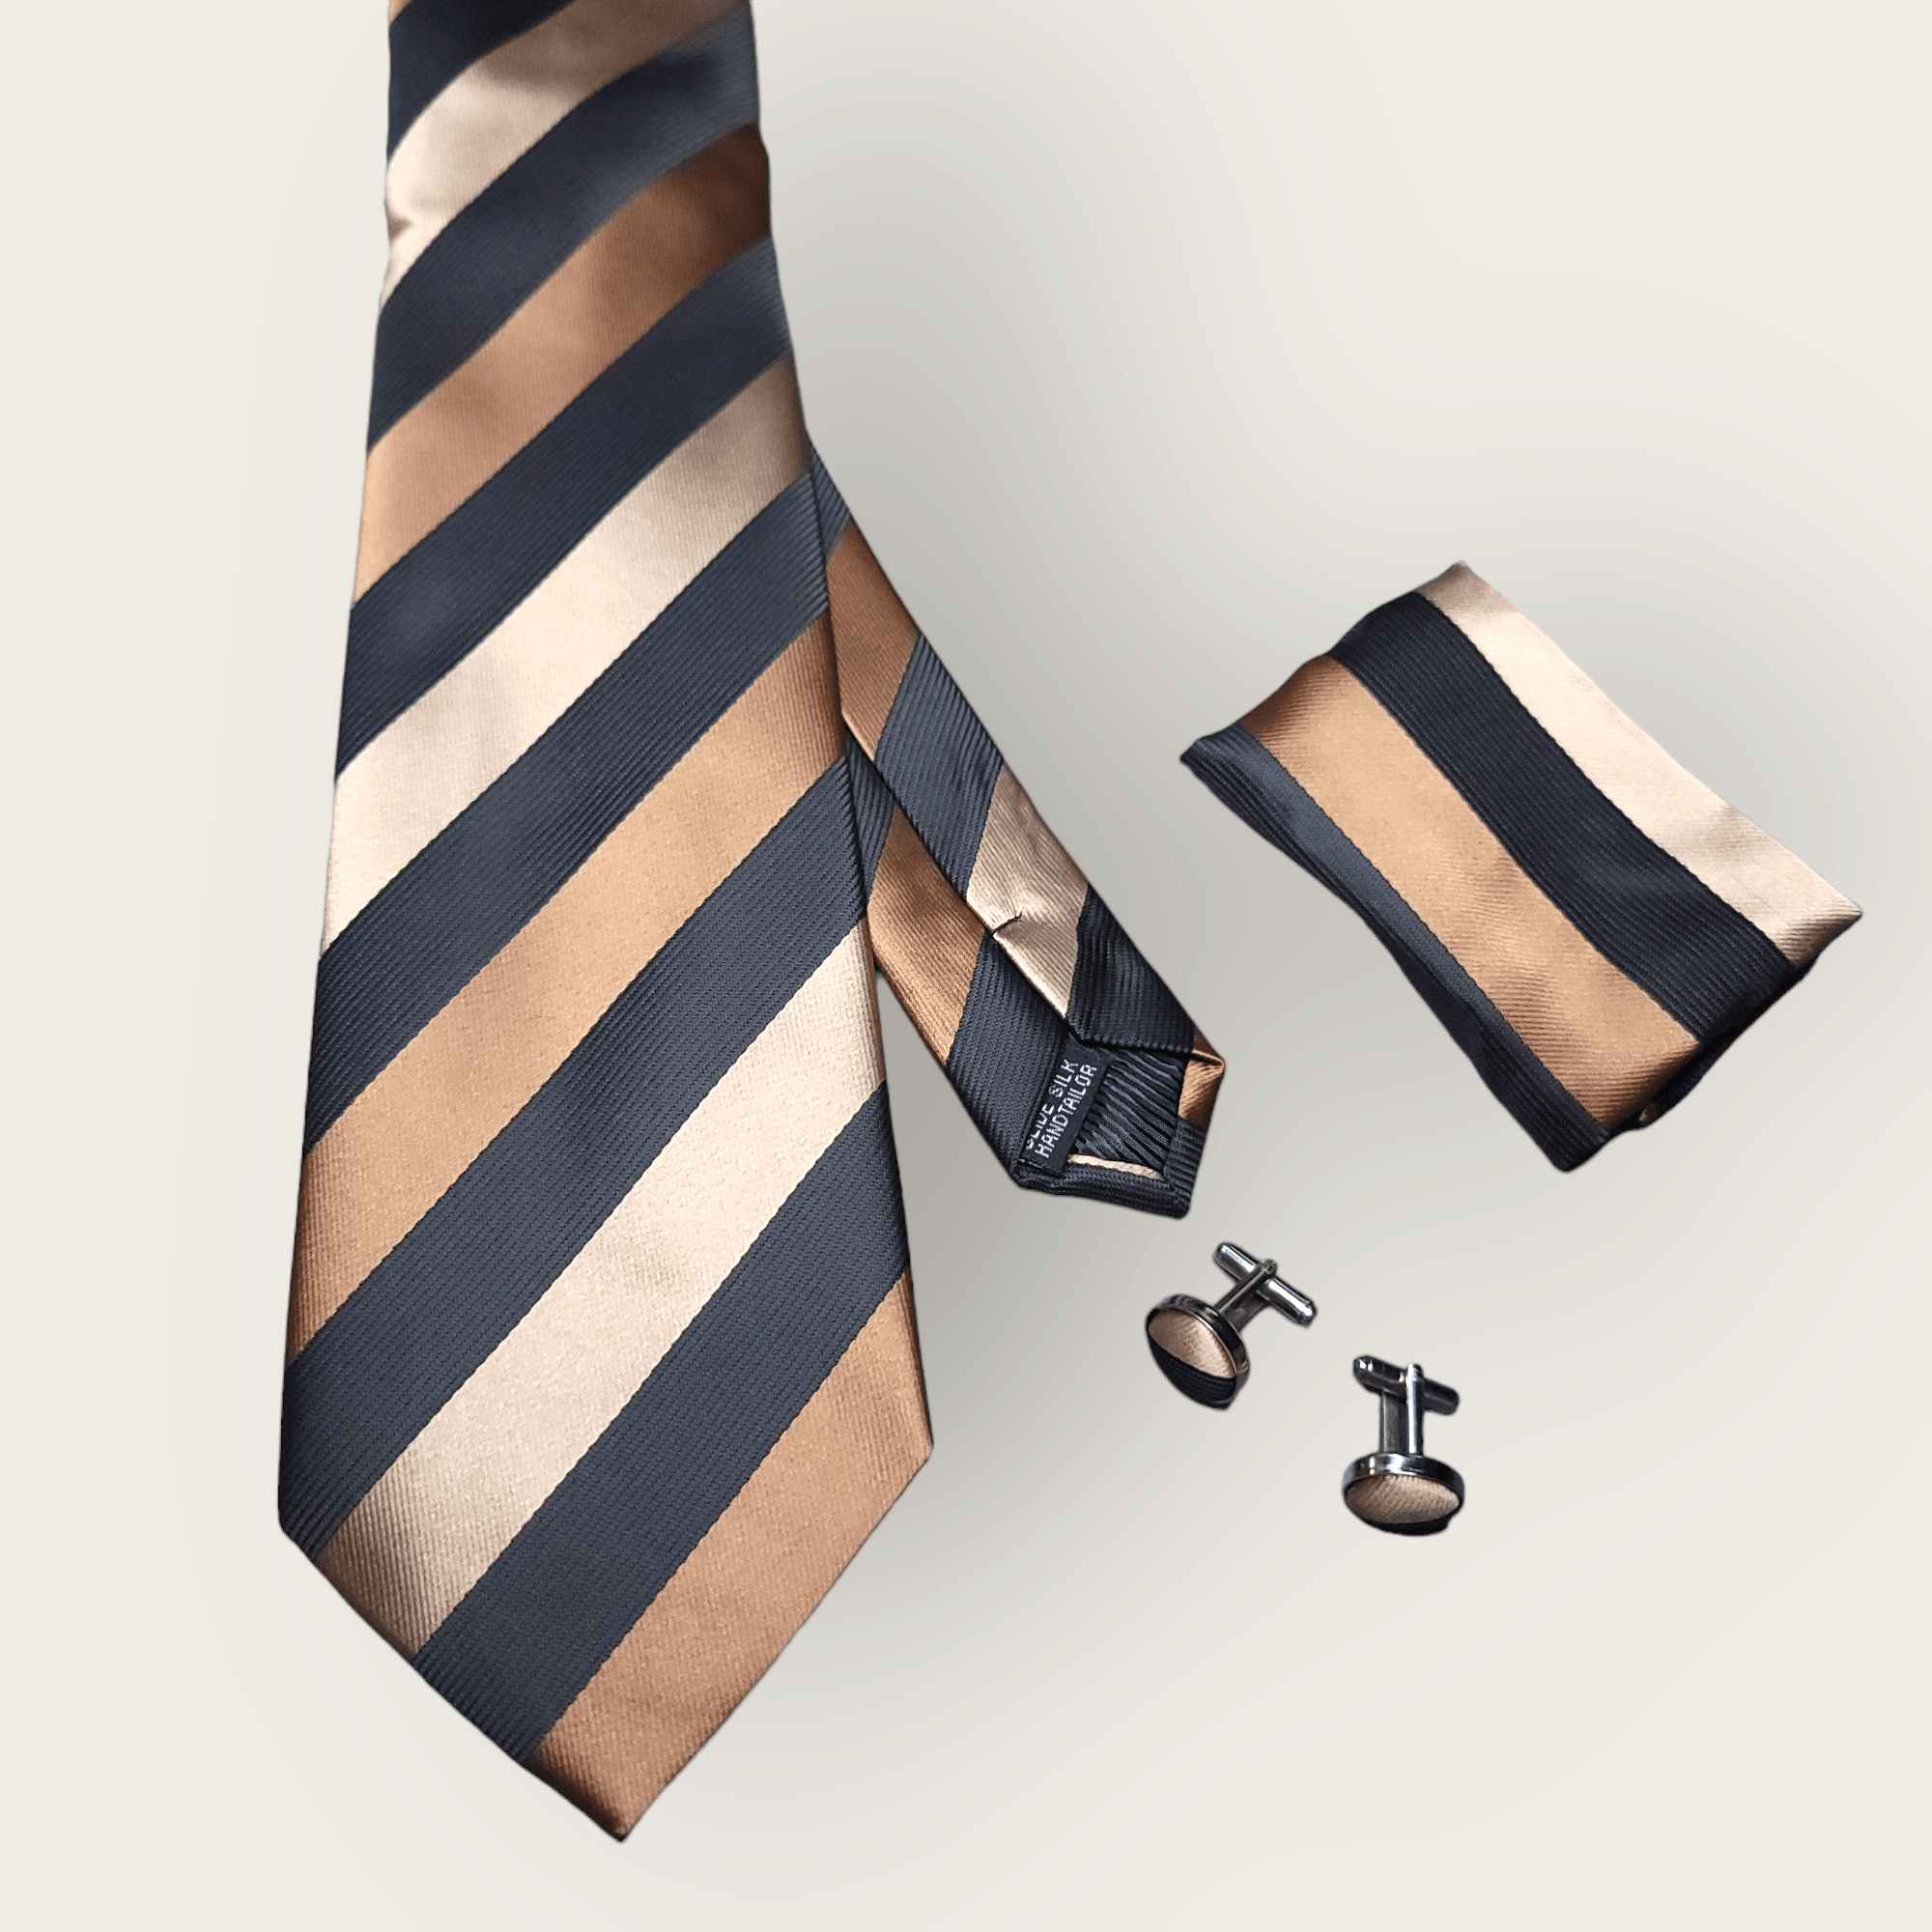 Brown Striped Black Silk Tie Pocket Square Cufflinks Set - STYLETIE